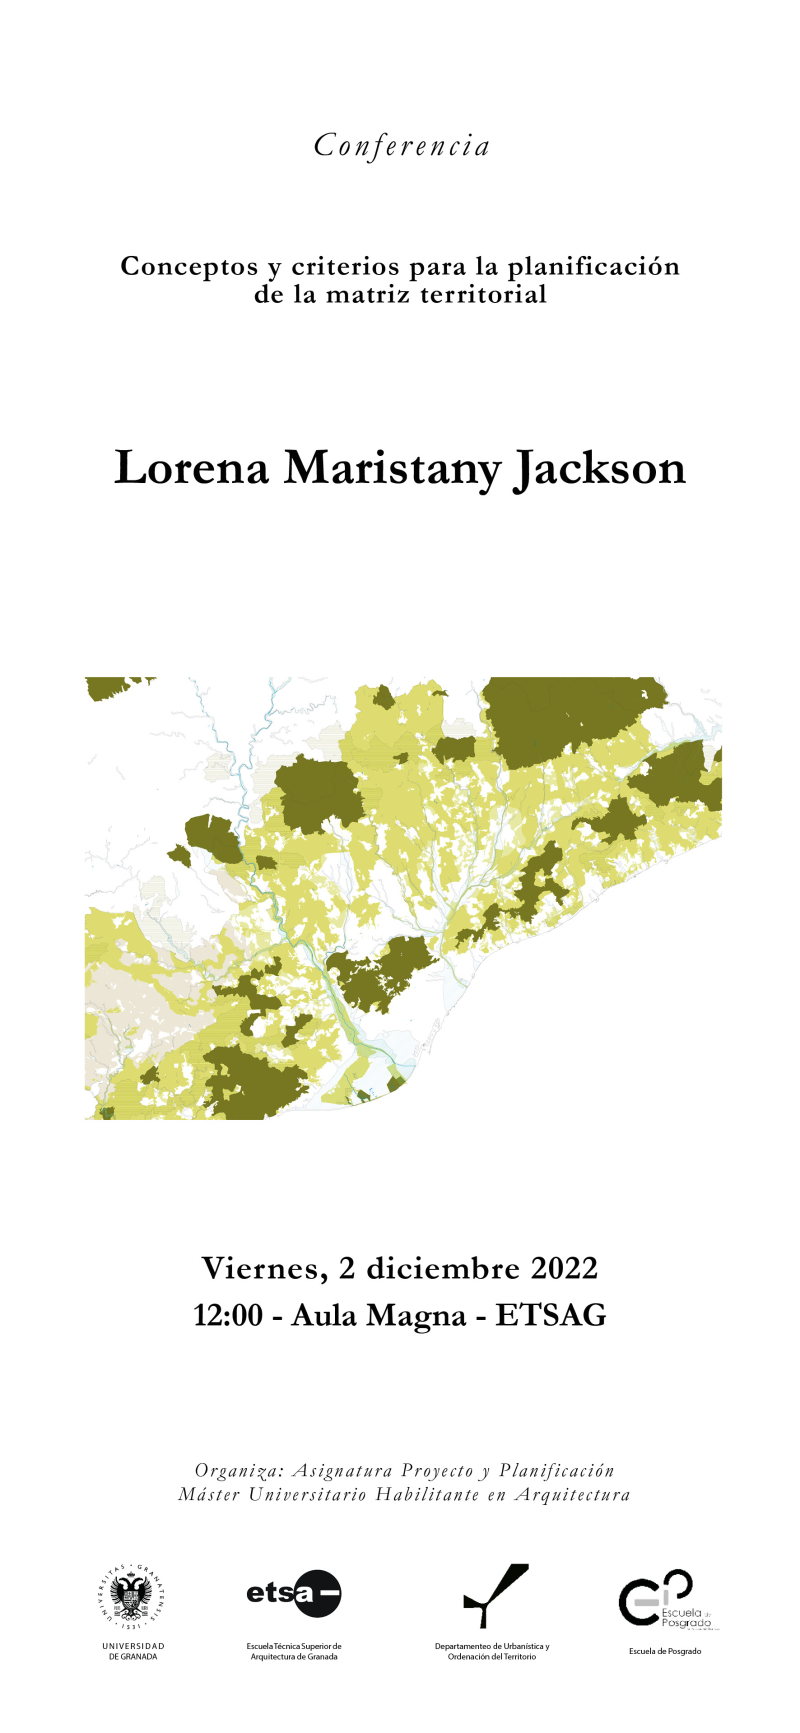 Cartel de la Conferencia de Lorena Maristany Jackson